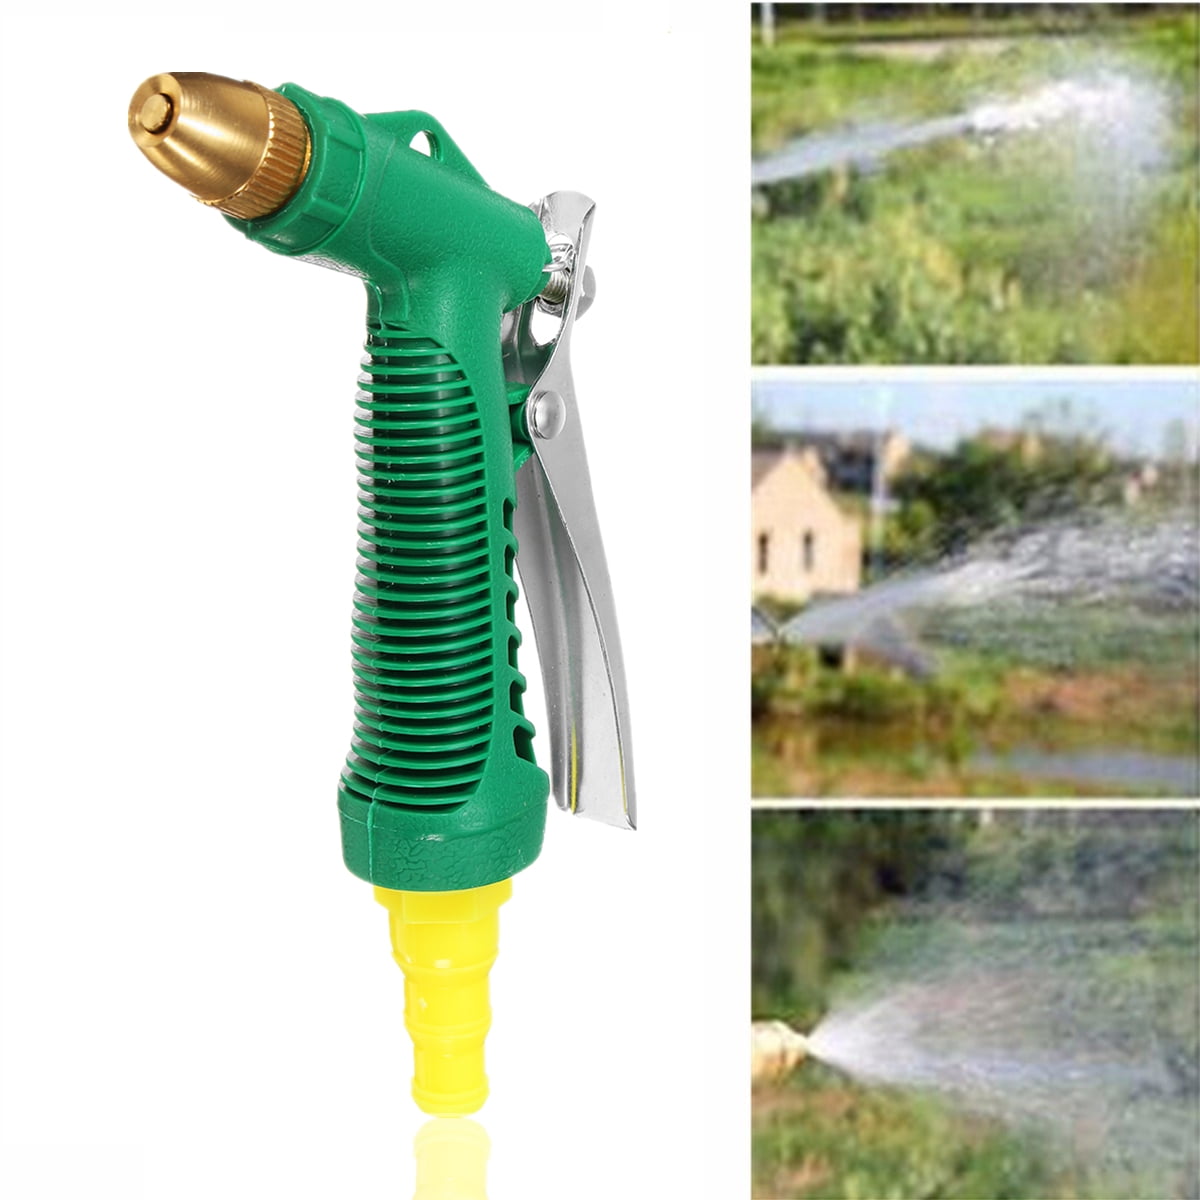 Details about   Garden Hose Nozzle Spray Gun Car Wash Cleaner Water Sprayer P5H0 